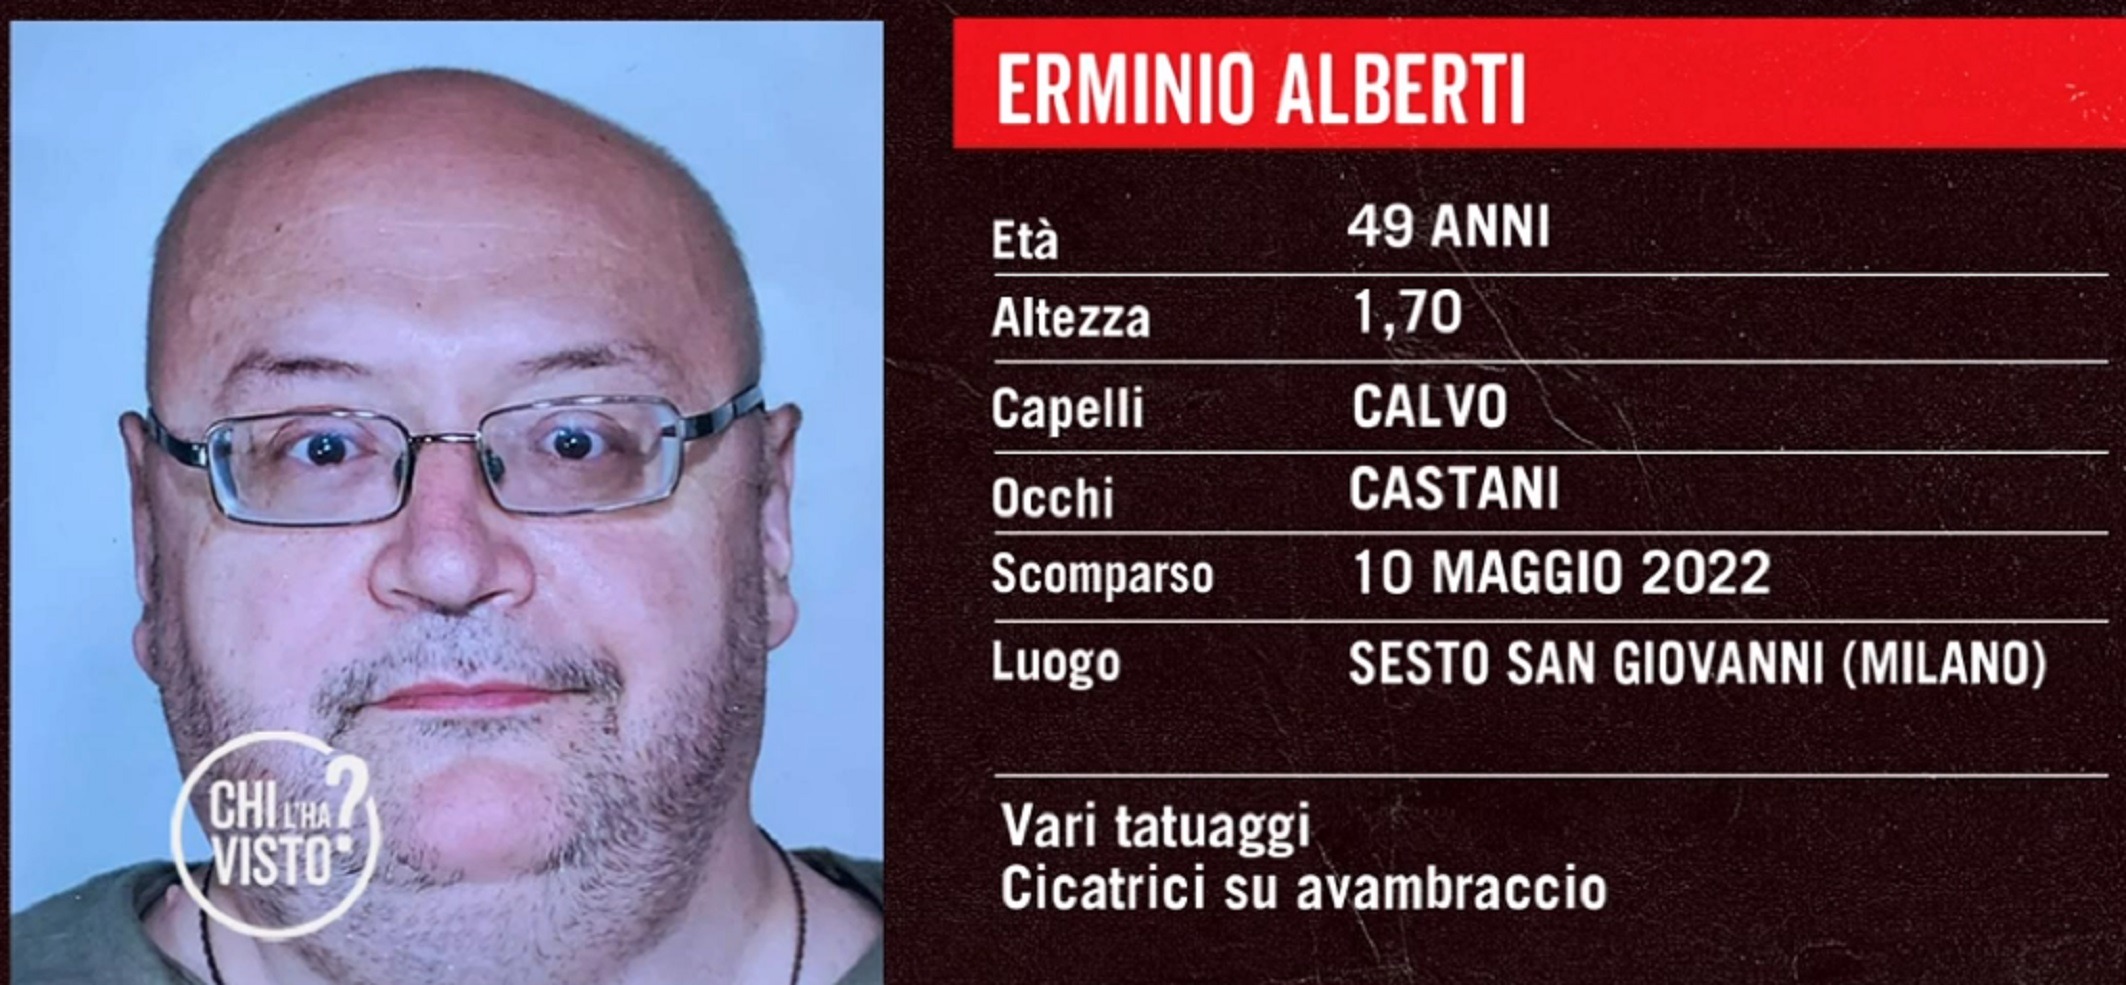 Erminio Alberti scomparso